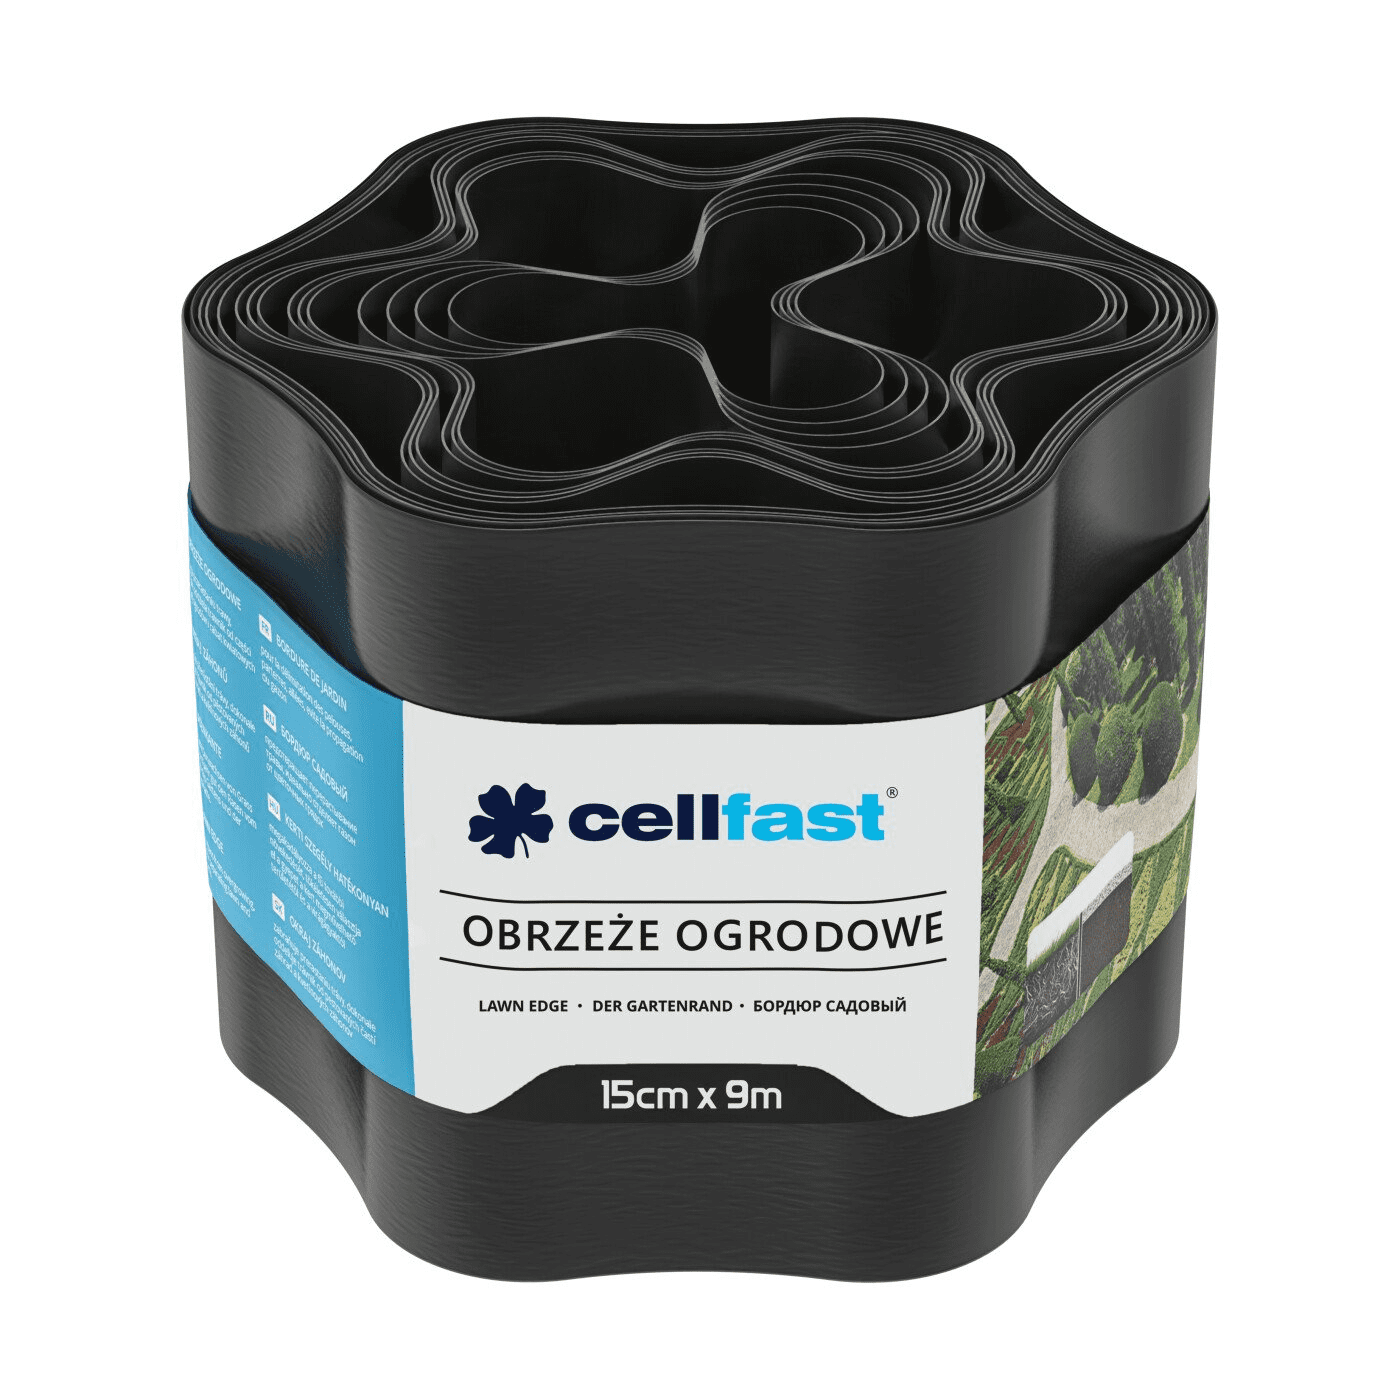 Cellfast Obrzeże Ogrodnicze 15cm x 9m Czarne